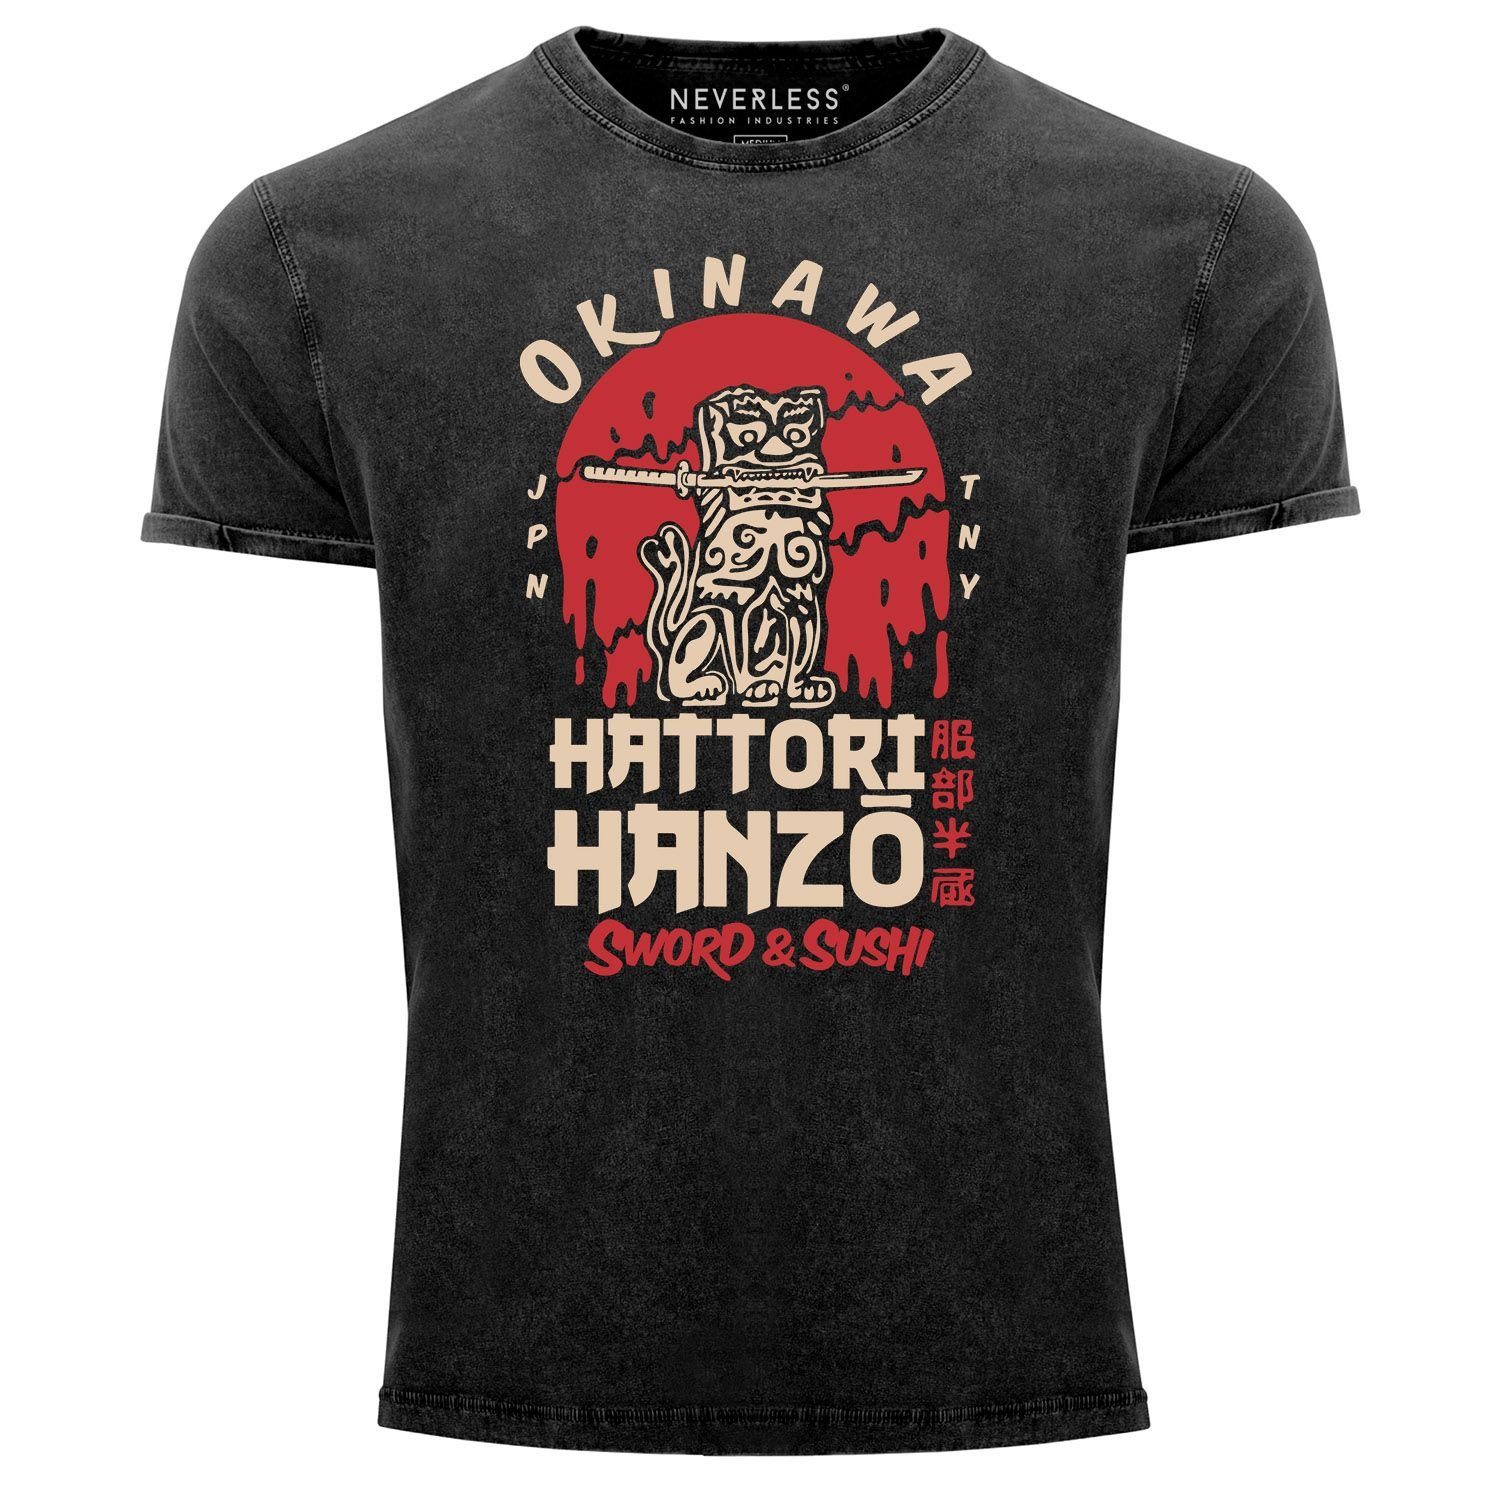 Neverless Print-Shirt Herren Vintage Shirt Hattori Hanzo Sword and Sushi Okinawa Japan Schriftzeichen Superior Design Used Look Neverless® mit Print schwarz